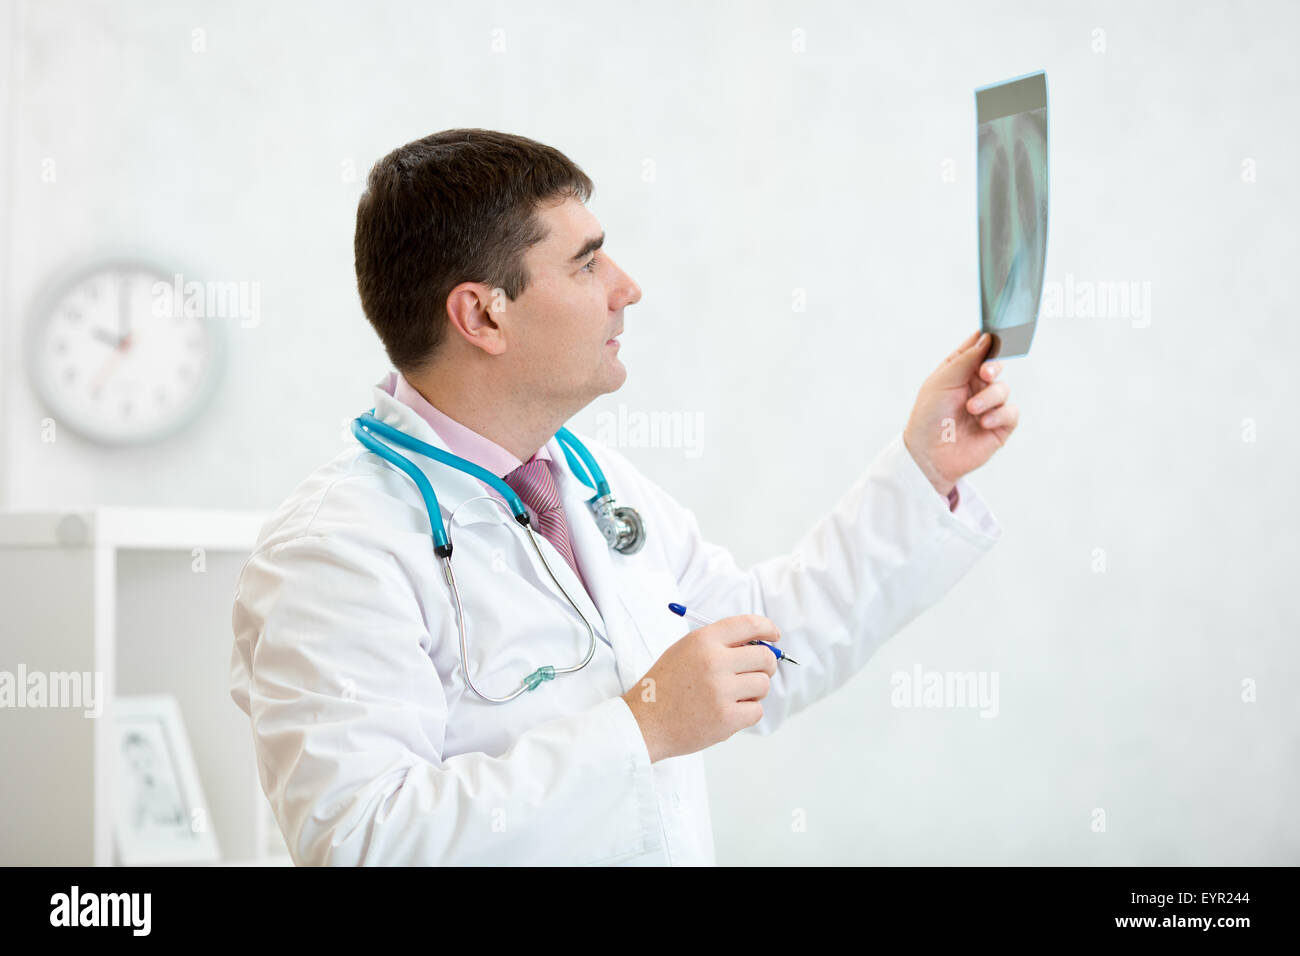 Medico di esaminare una radiografia del polmone Foto Stock